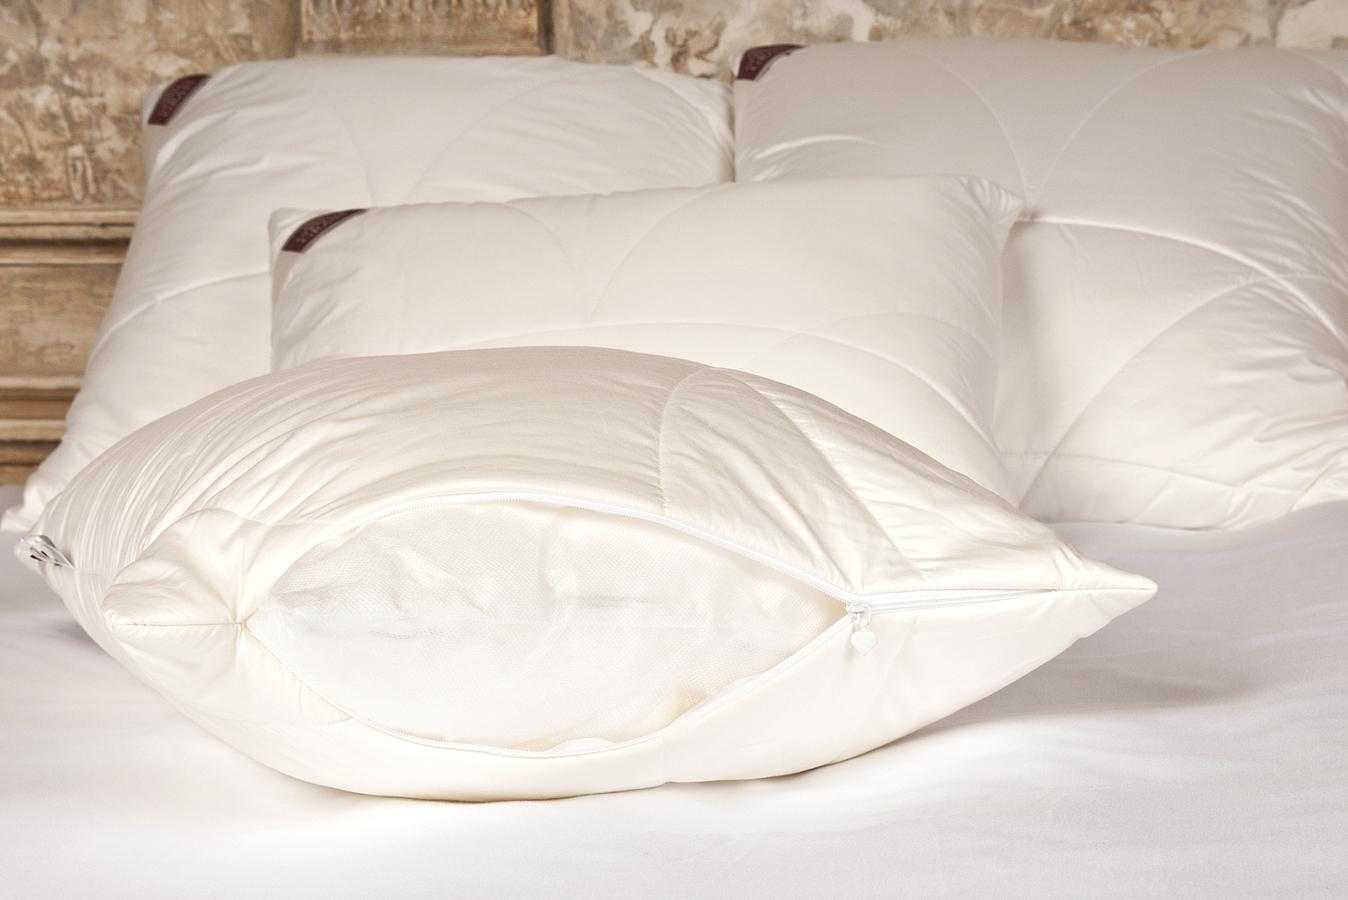 Наполнитель для подушек - какие лучше покупать и выбрать для сна, отзывы про комфорель, полиэфирное волокно что это такое, плюсы и минусы